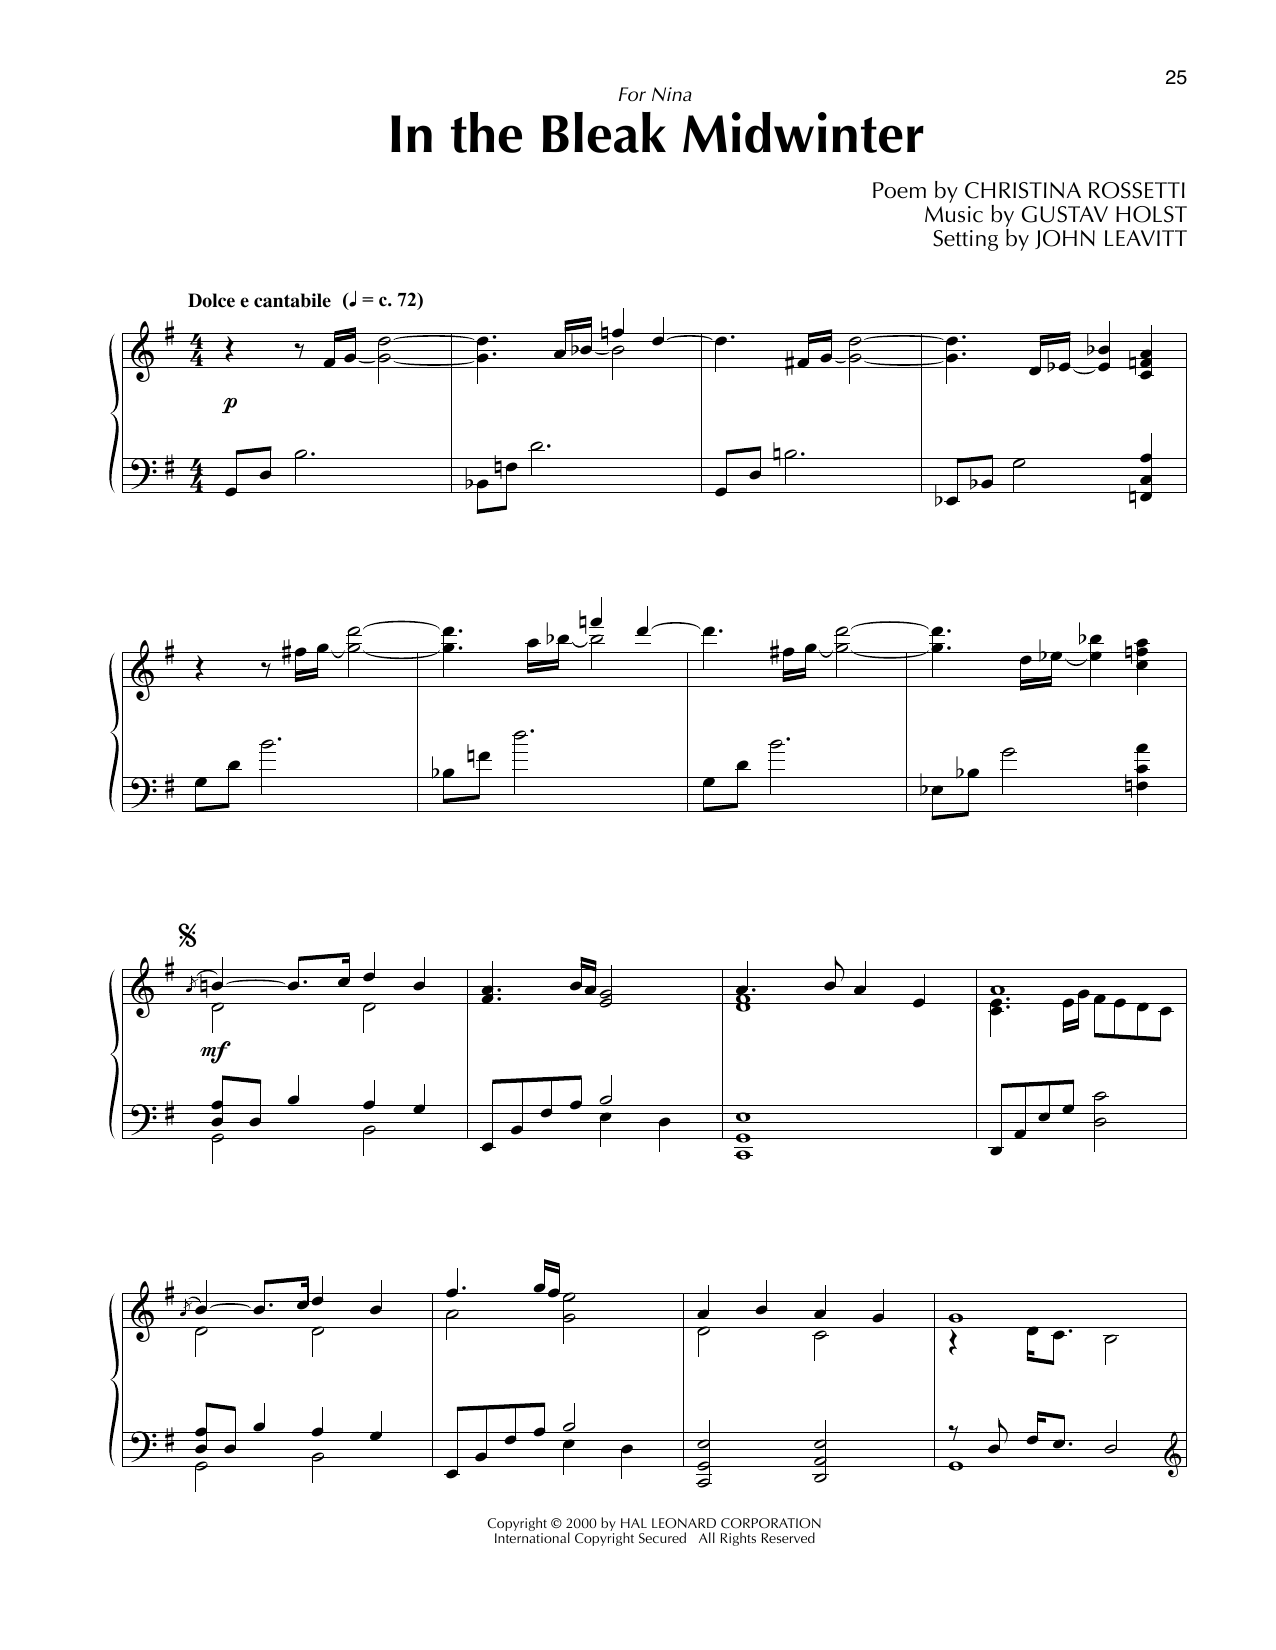 Gustav Holst In The Bleak Midwinter (arr. John Leavitt) Sheet Music Notes & Chords for Piano Solo - Download or Print PDF